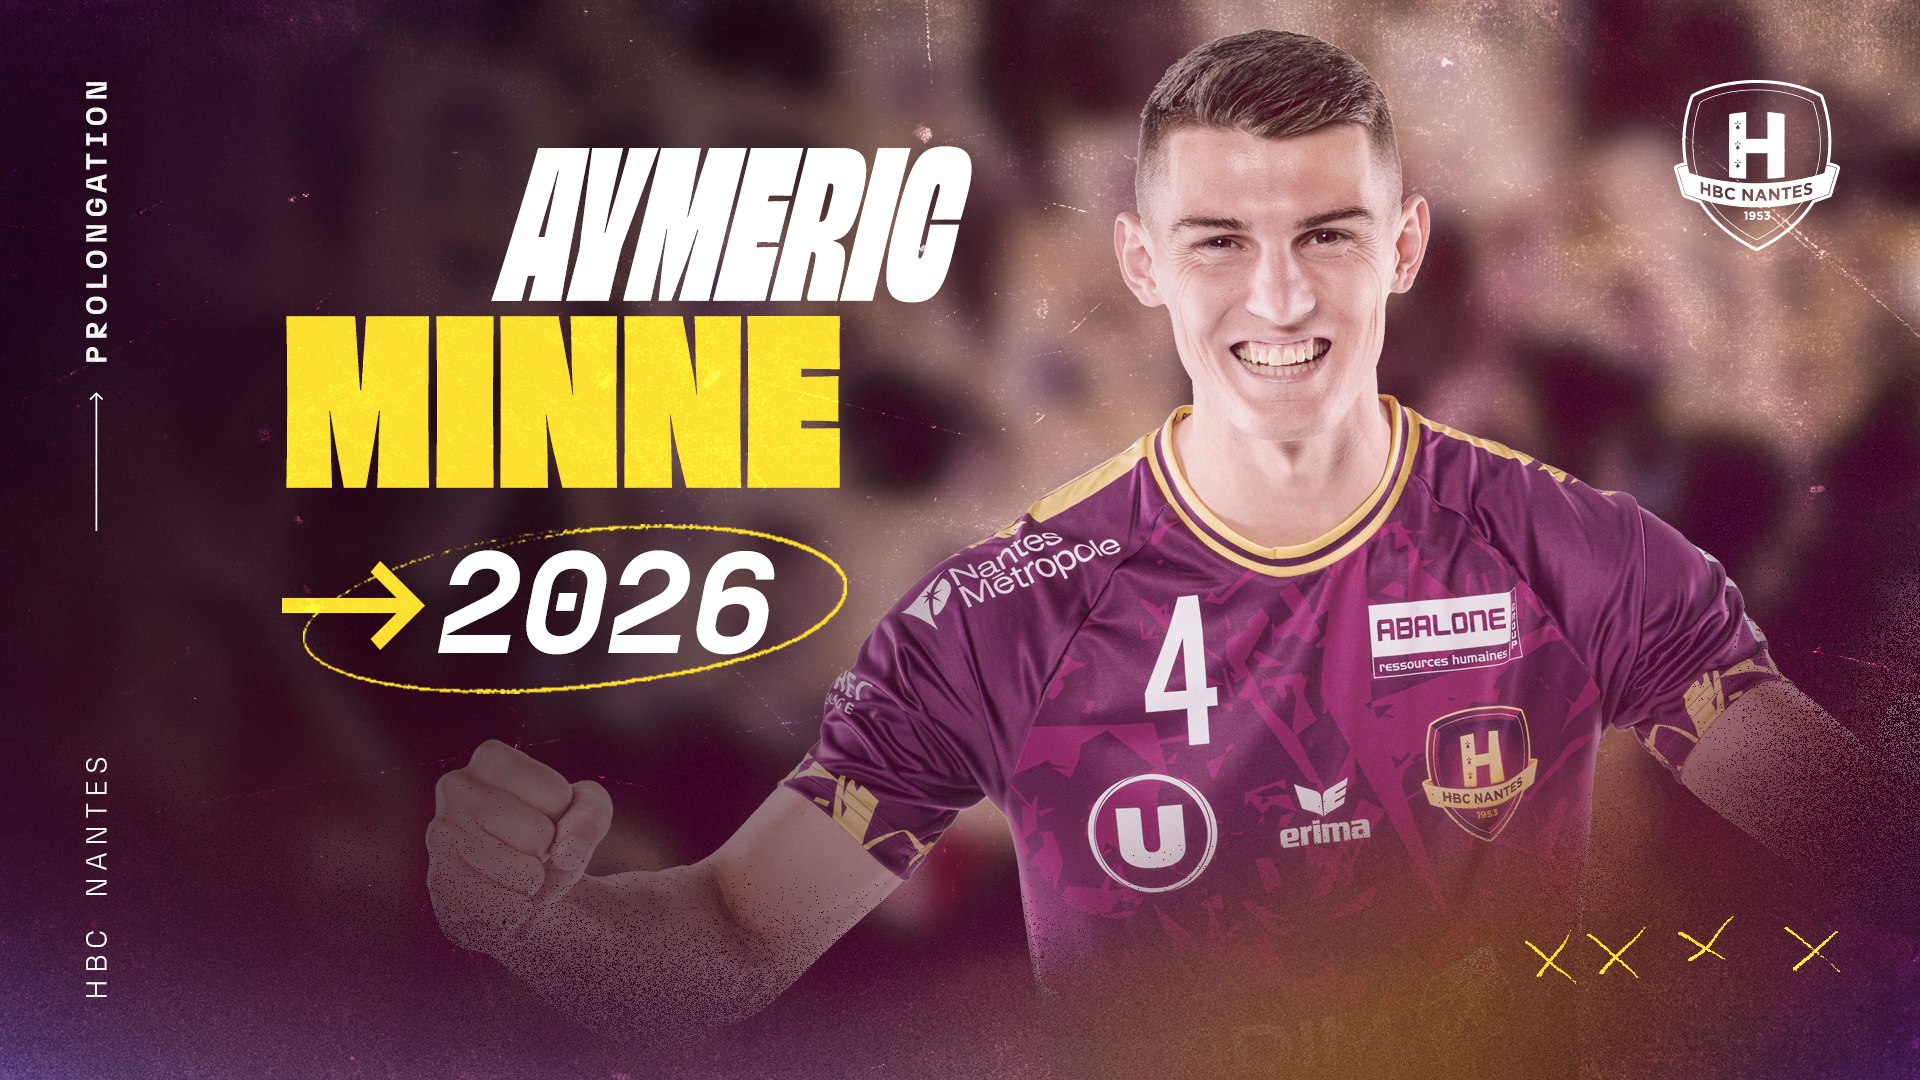 Aymeric Minne prolonge au HBC Nantes jusqu'en 2026